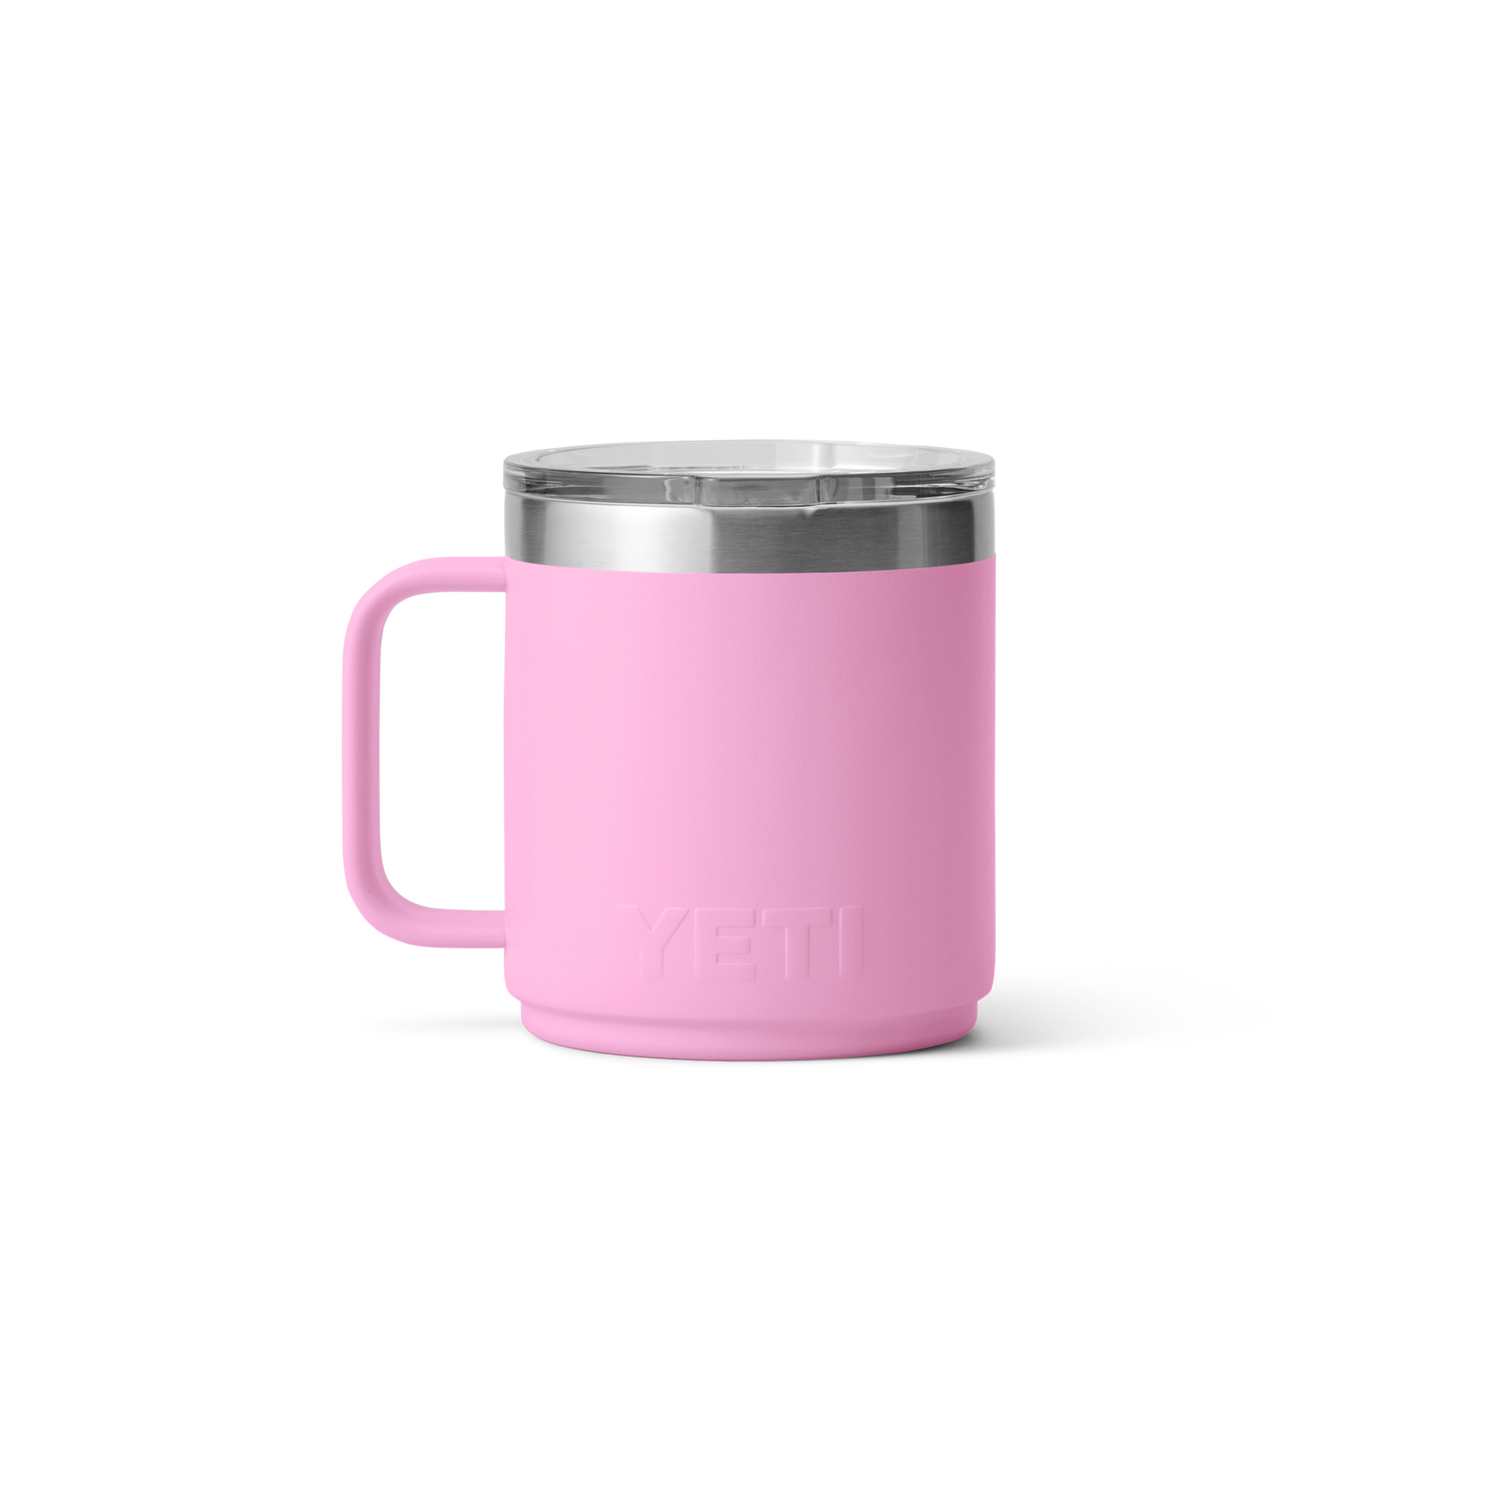 YETI Rambler® 10 oz (296 ml) Mug Power Pink